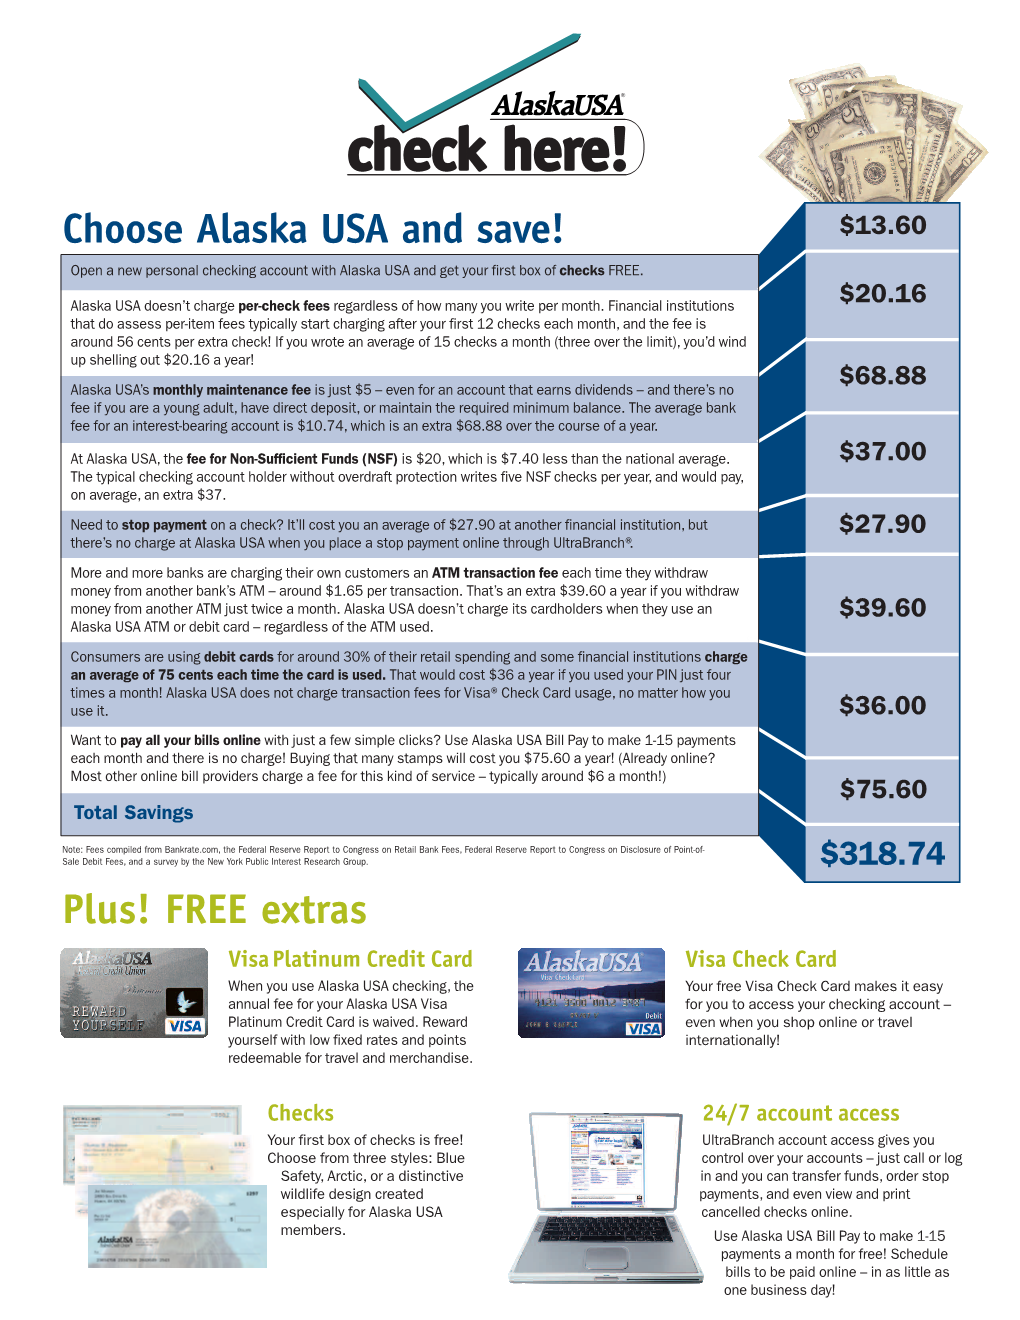 Choose Alaska USA and Save! Plus! FREE Extras